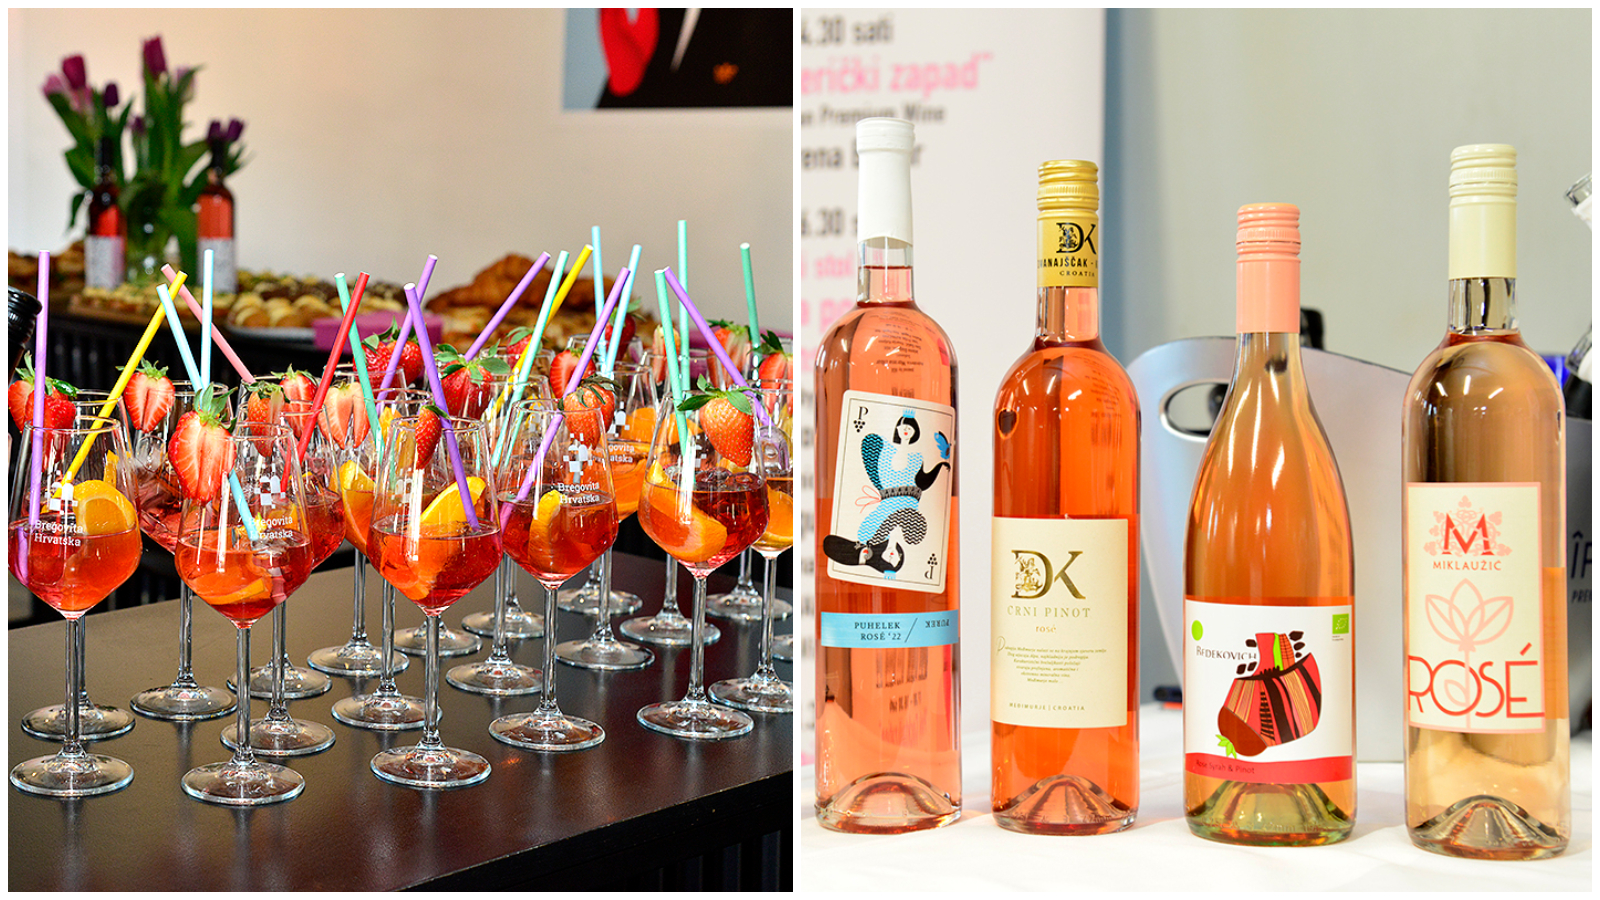 Ove godine održava se 10. Pink Day festival na kojem uživamo u rosé vinima. Imamo sve detalje